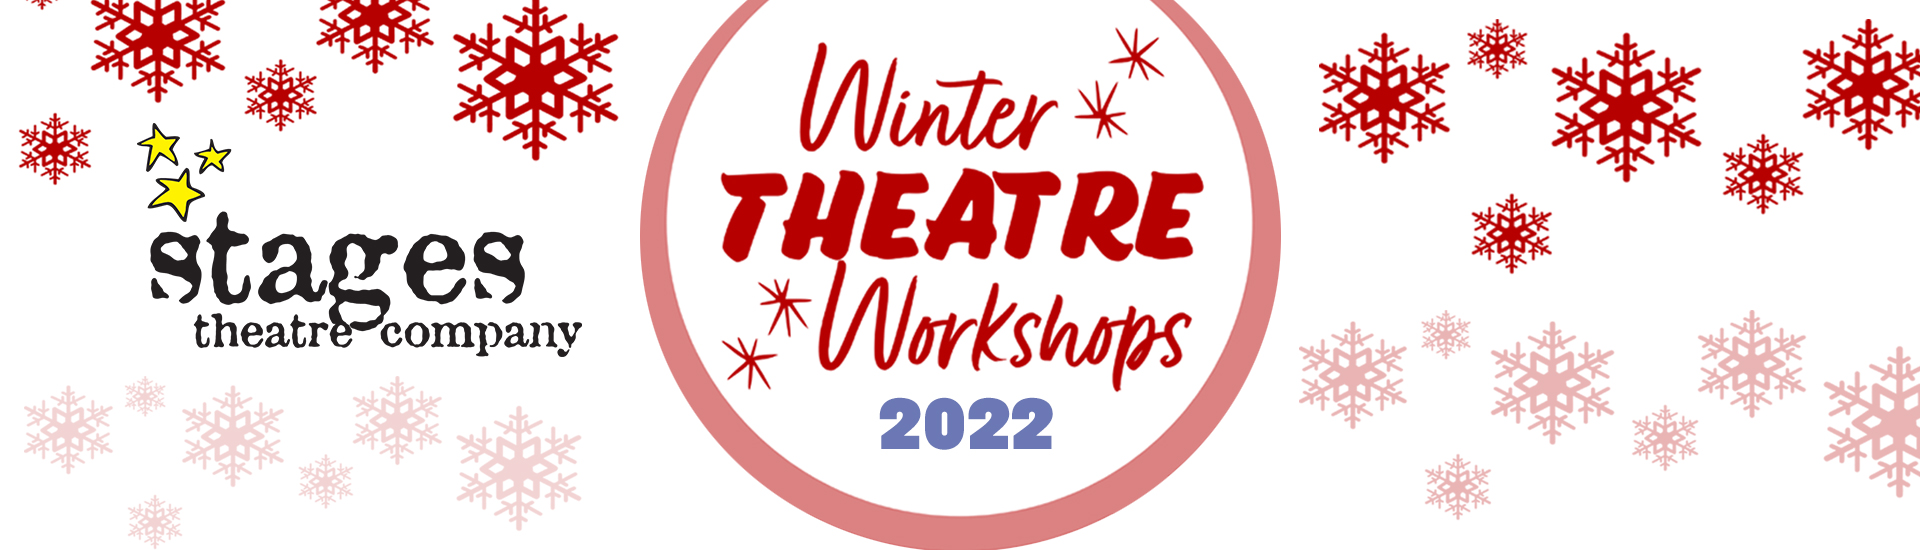 Winter-Theatre-Workshops-2022-BANNER2